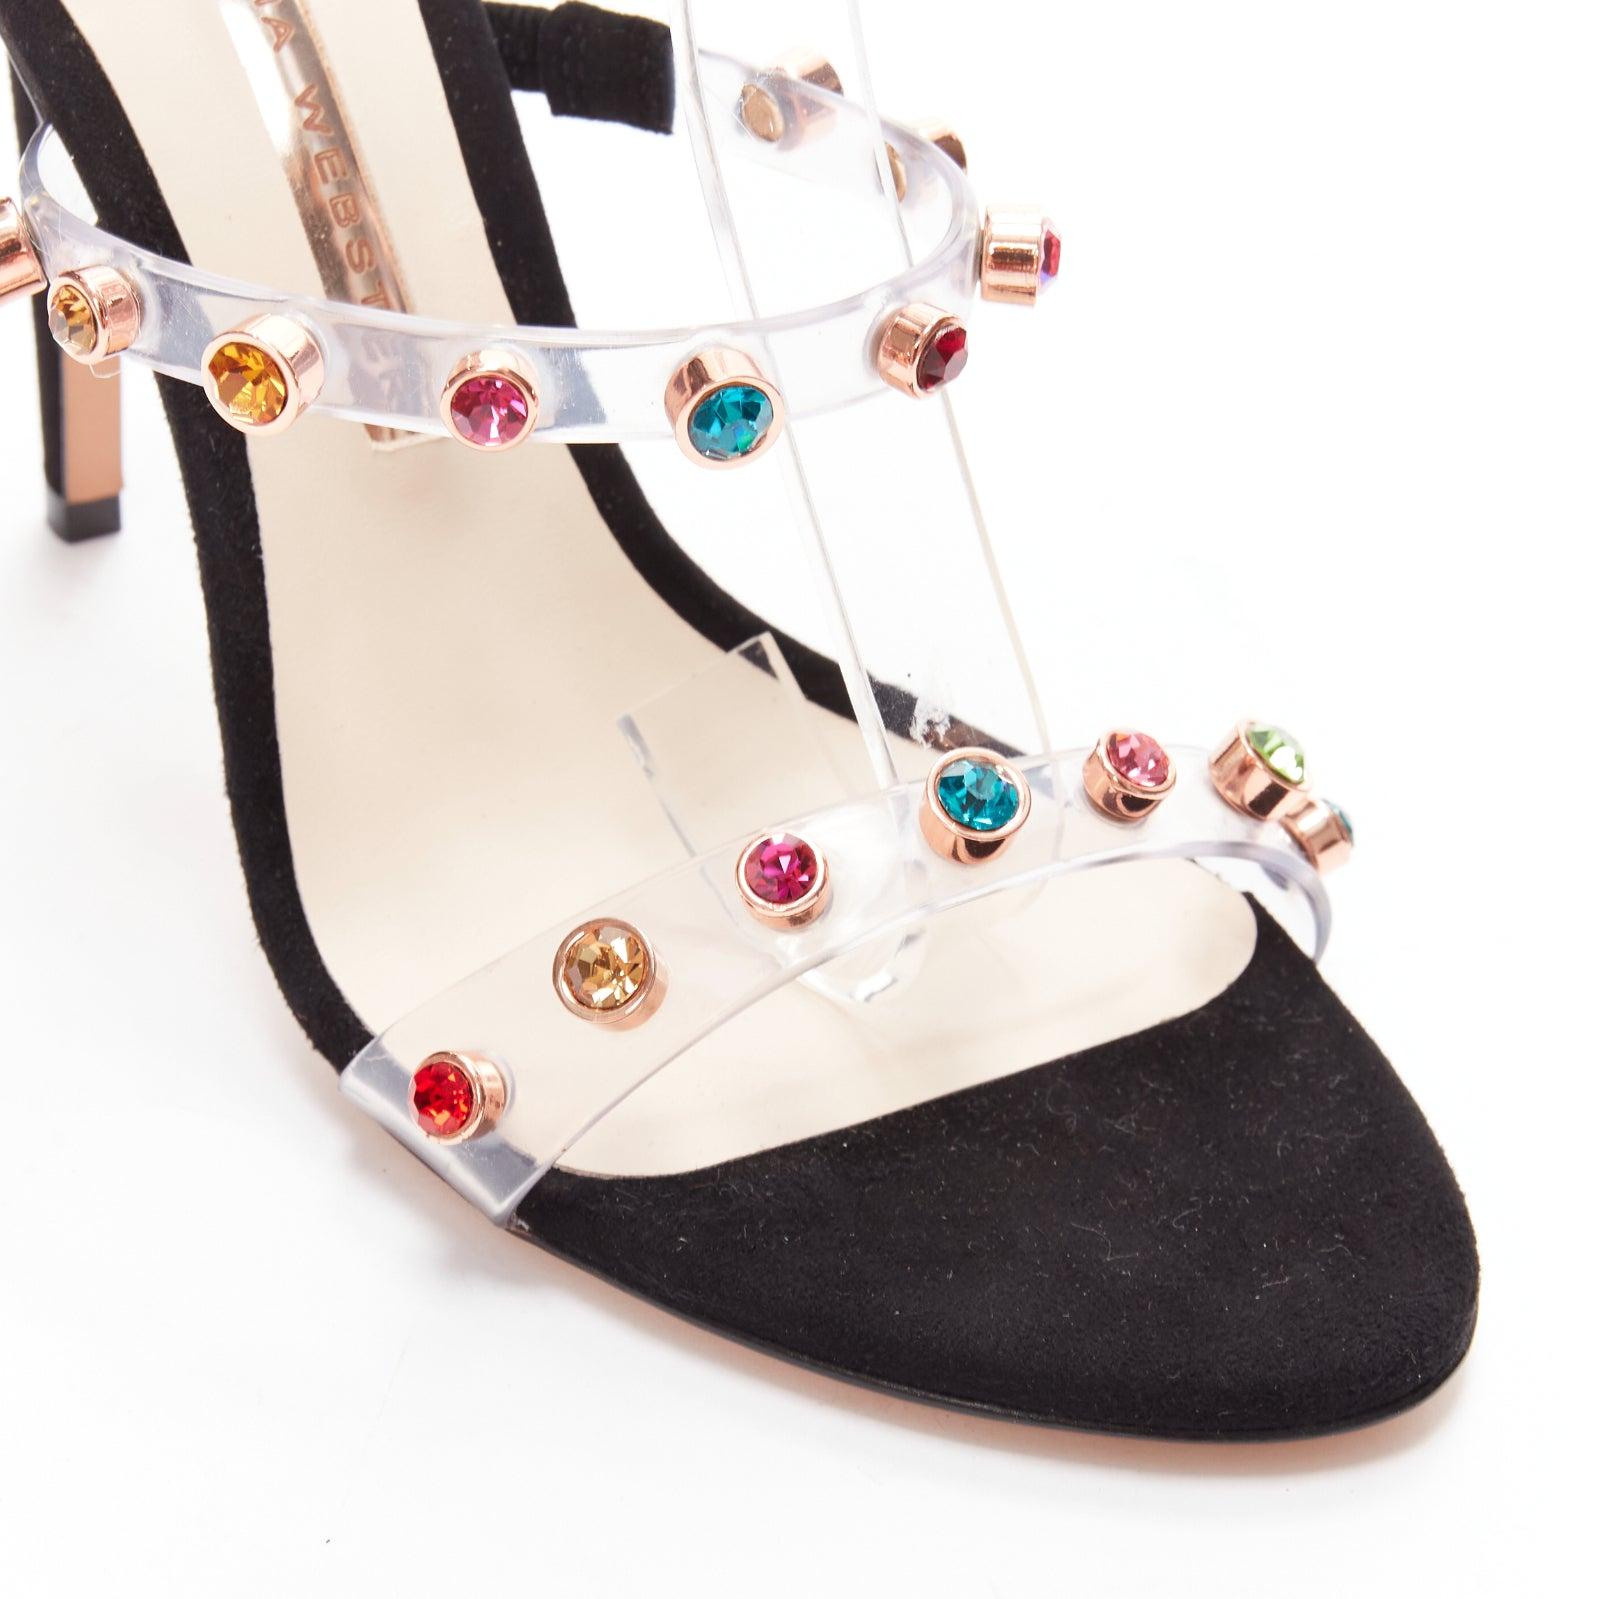 SOPHIA WEBSTER Rosalind 100 multicolor gem crystal PVC strappy heels EU38.5 For Sale 2